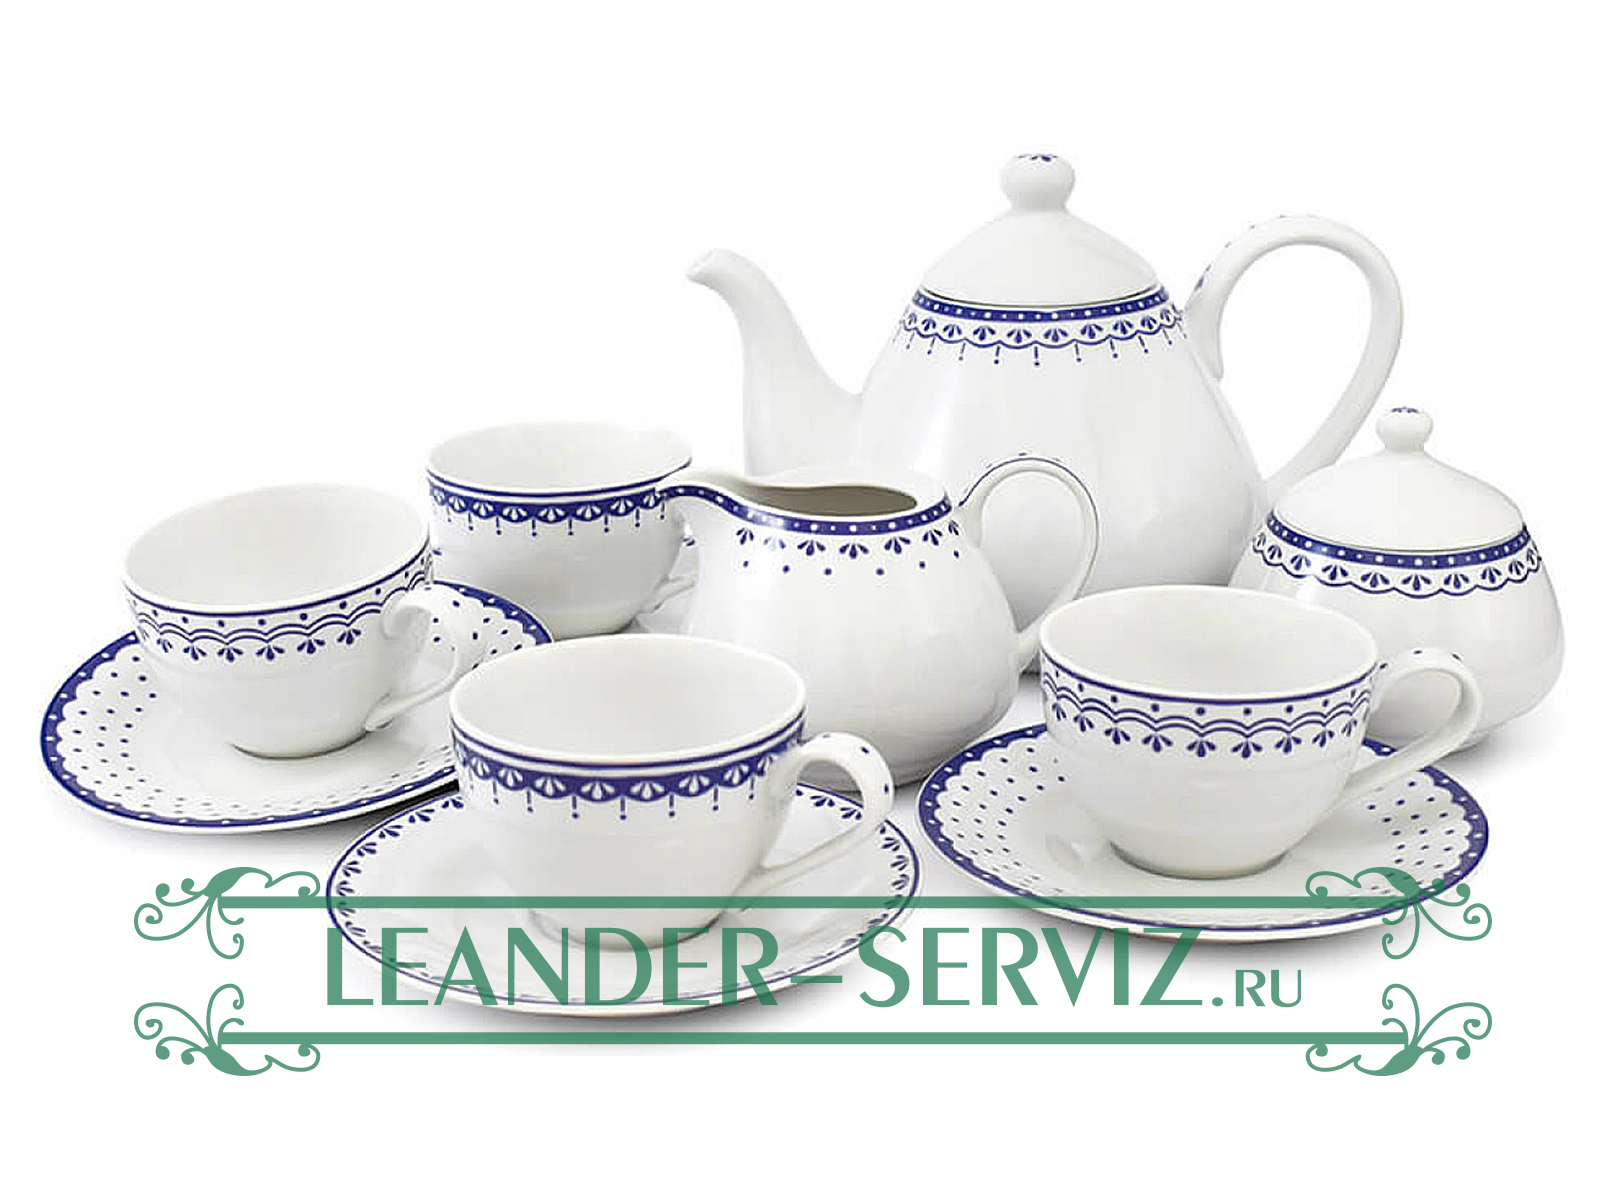 картинка Чайный сервиз 4 персоны 11 предметов, HYGGELYNE, Синие узоры 71160717-327E Leander от интернет-магазина Leander Serviz